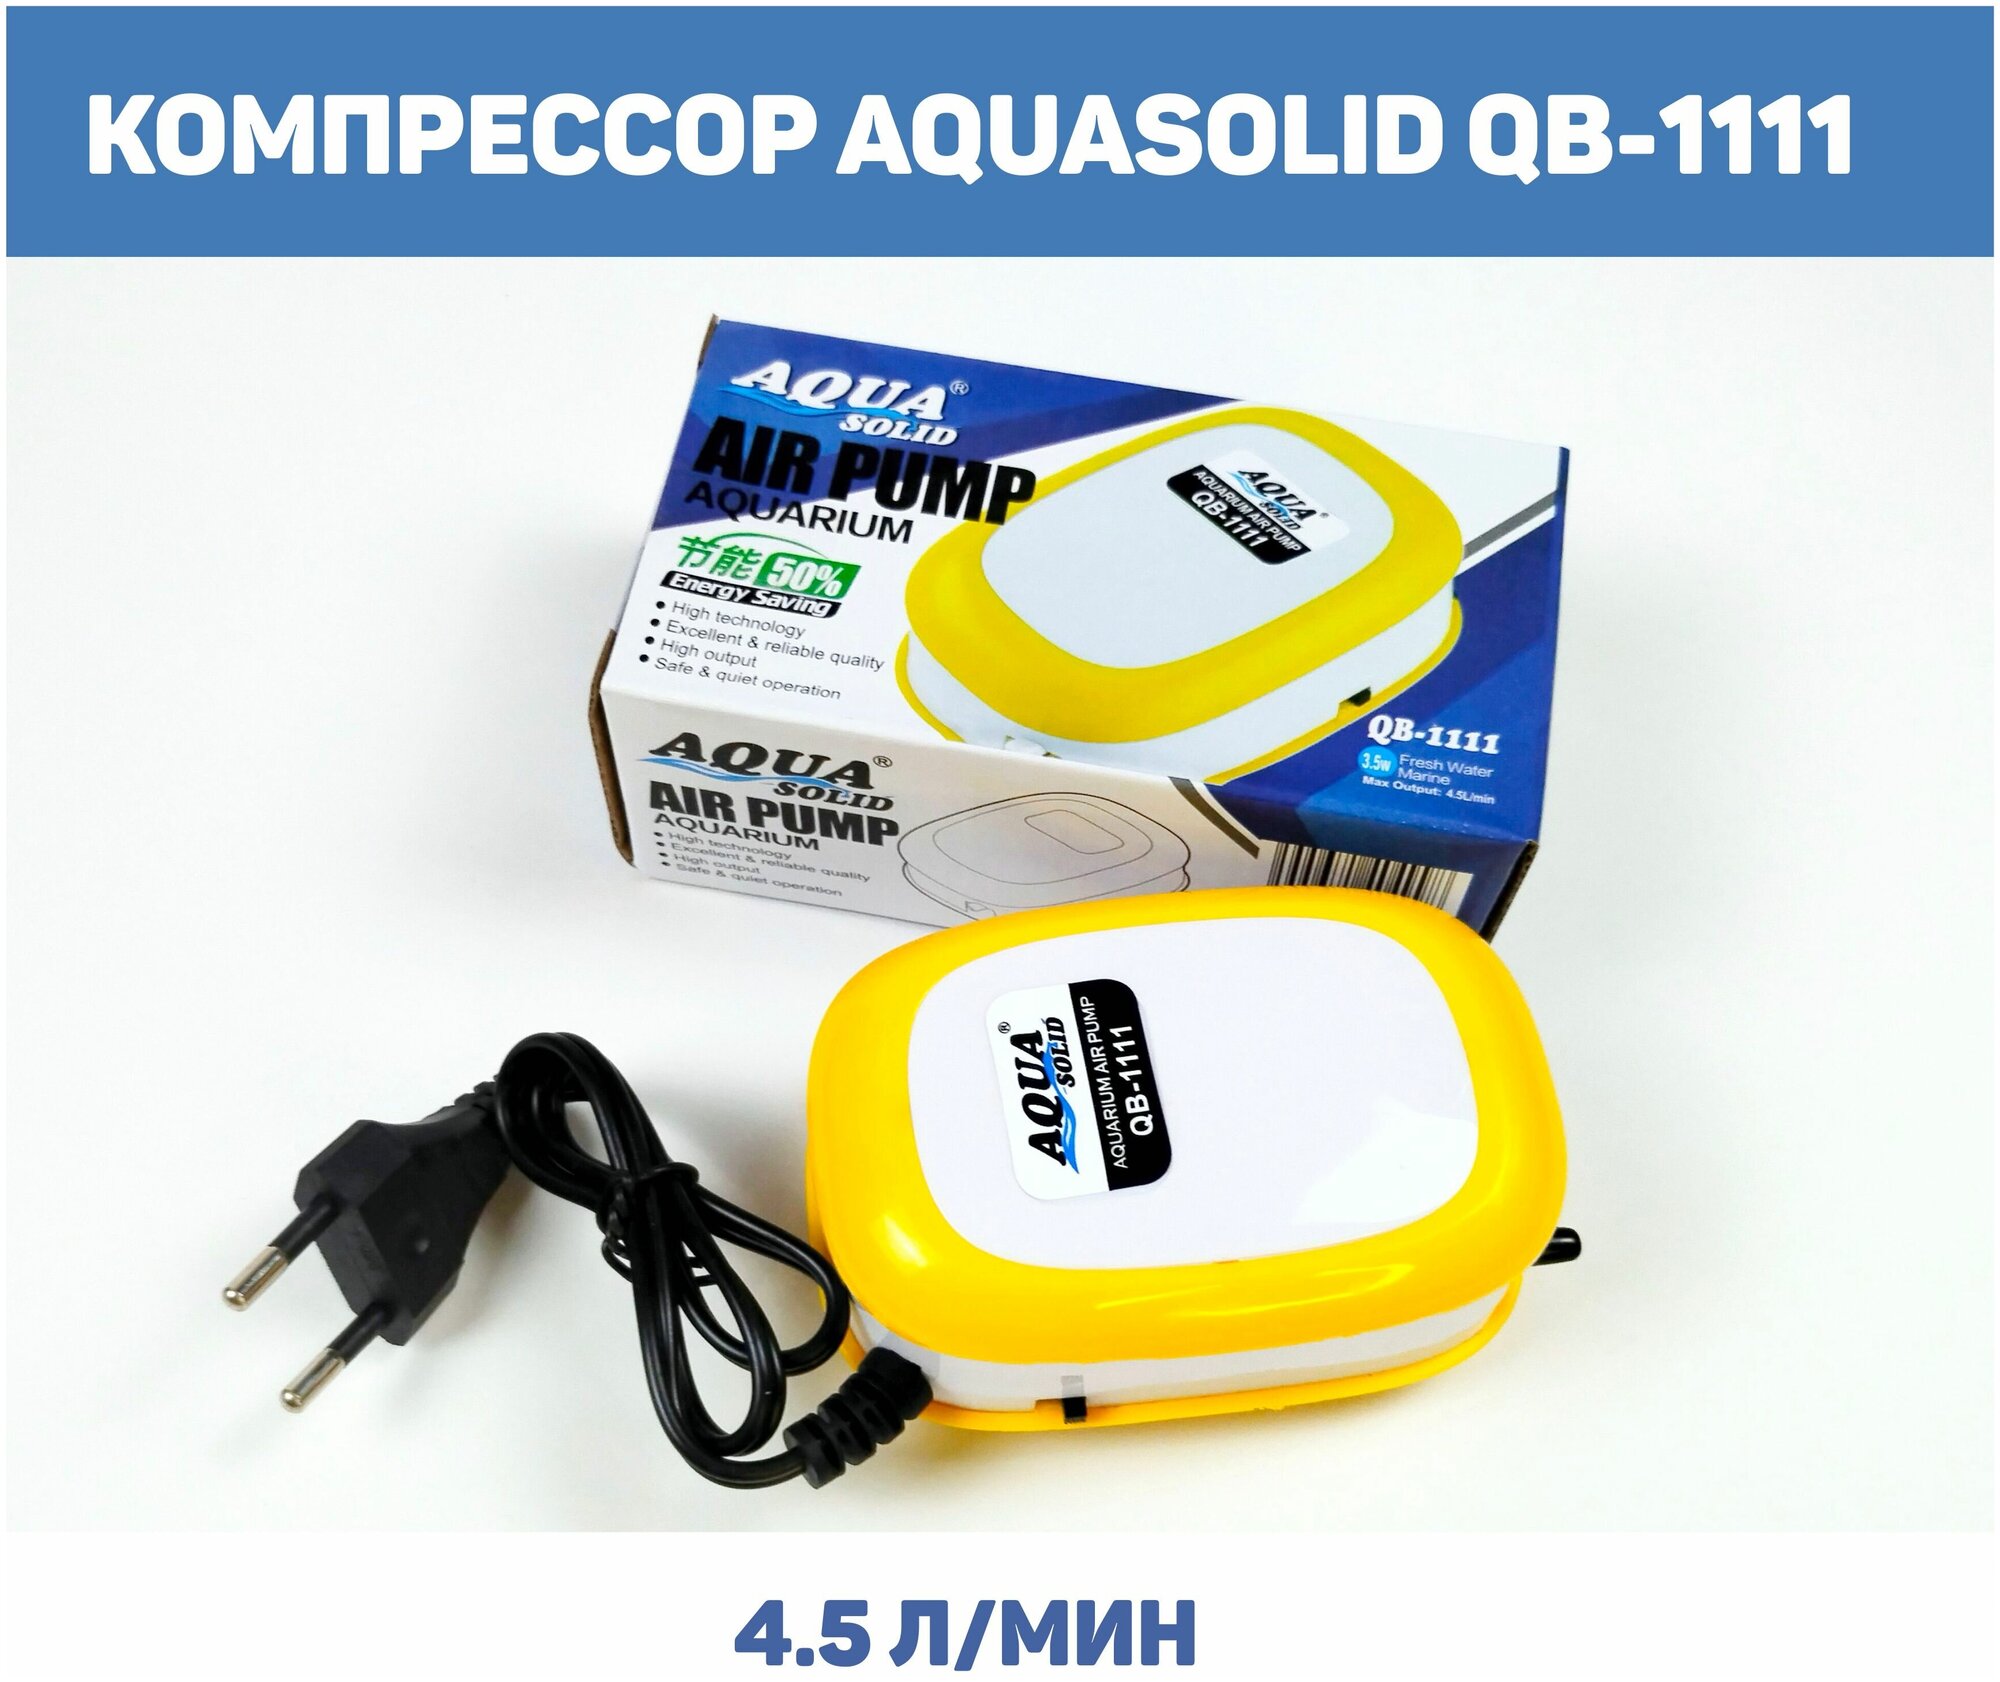 Компрессор AQUASOLID QB-1111, одноканальный, 4.5 л/мин